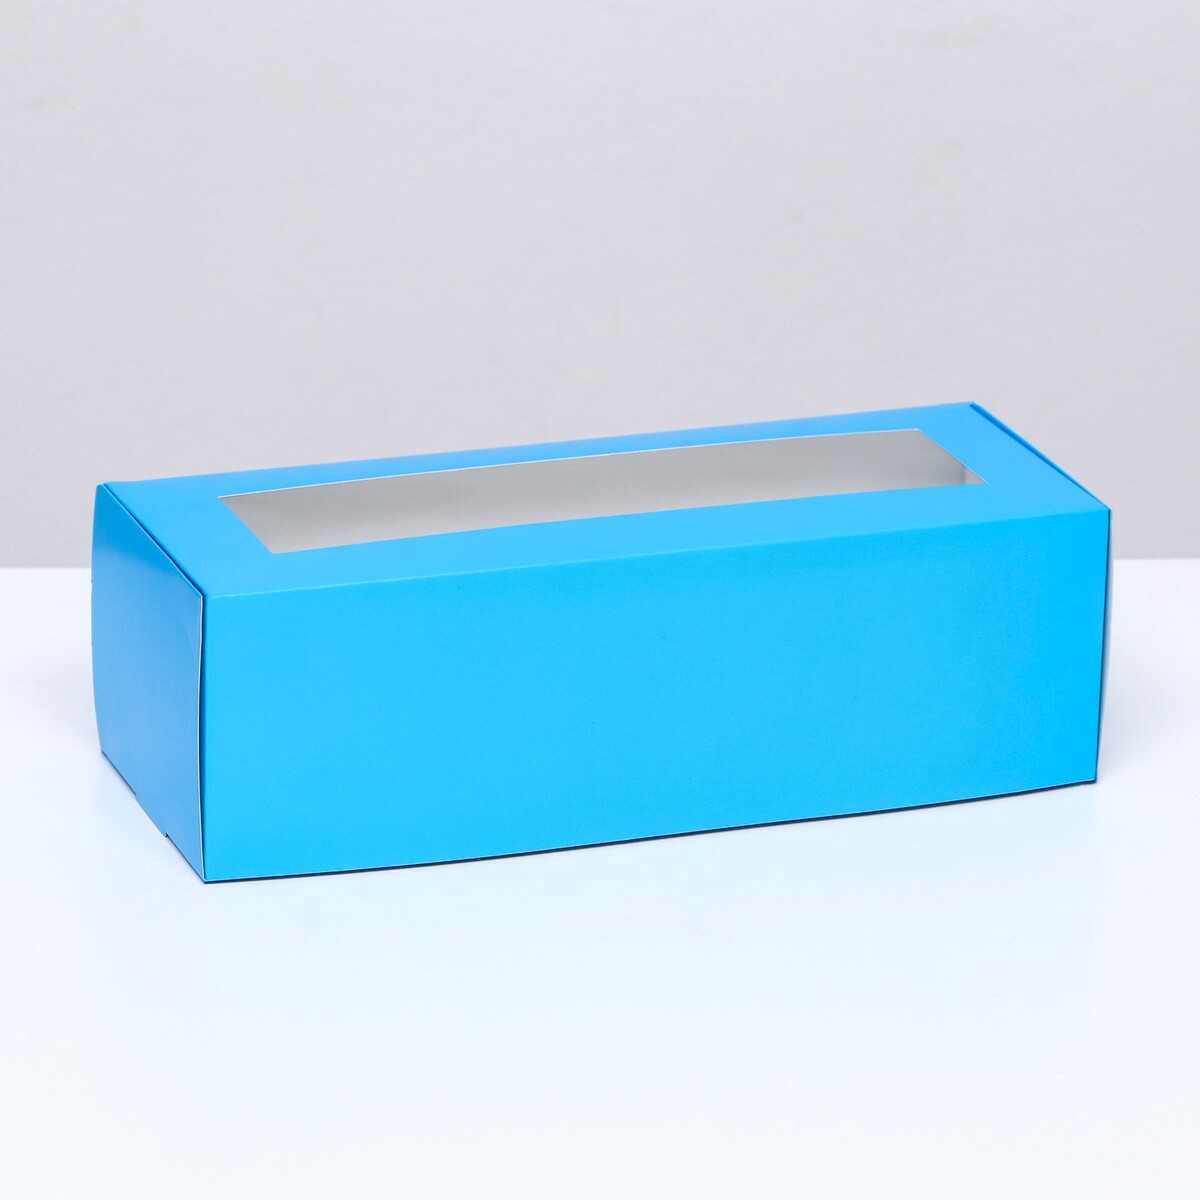 Коробка складная с окном под рулет, голубая, 26 х 10 х 8 см коробка складная с окном под рулет голубая 26 х 10 х 8 см